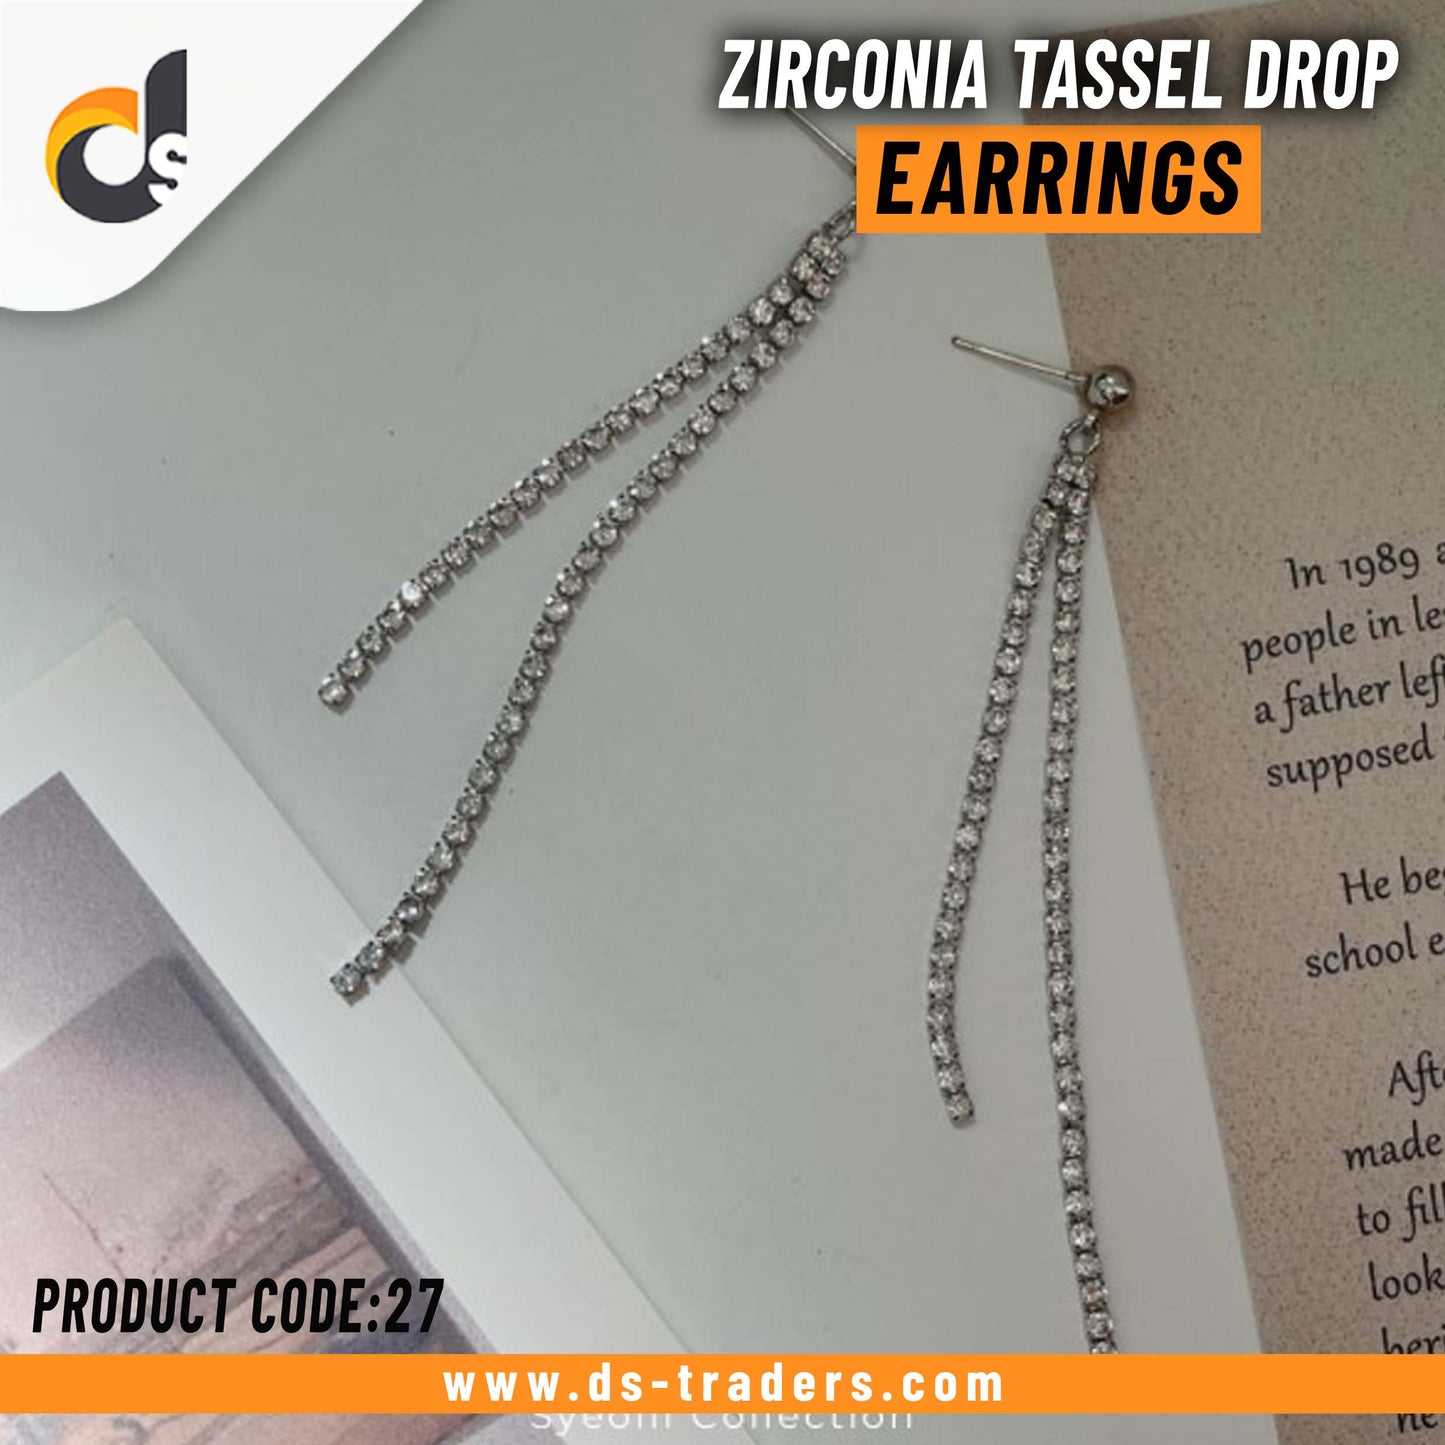 Zirconia Tassel Drop Earrings